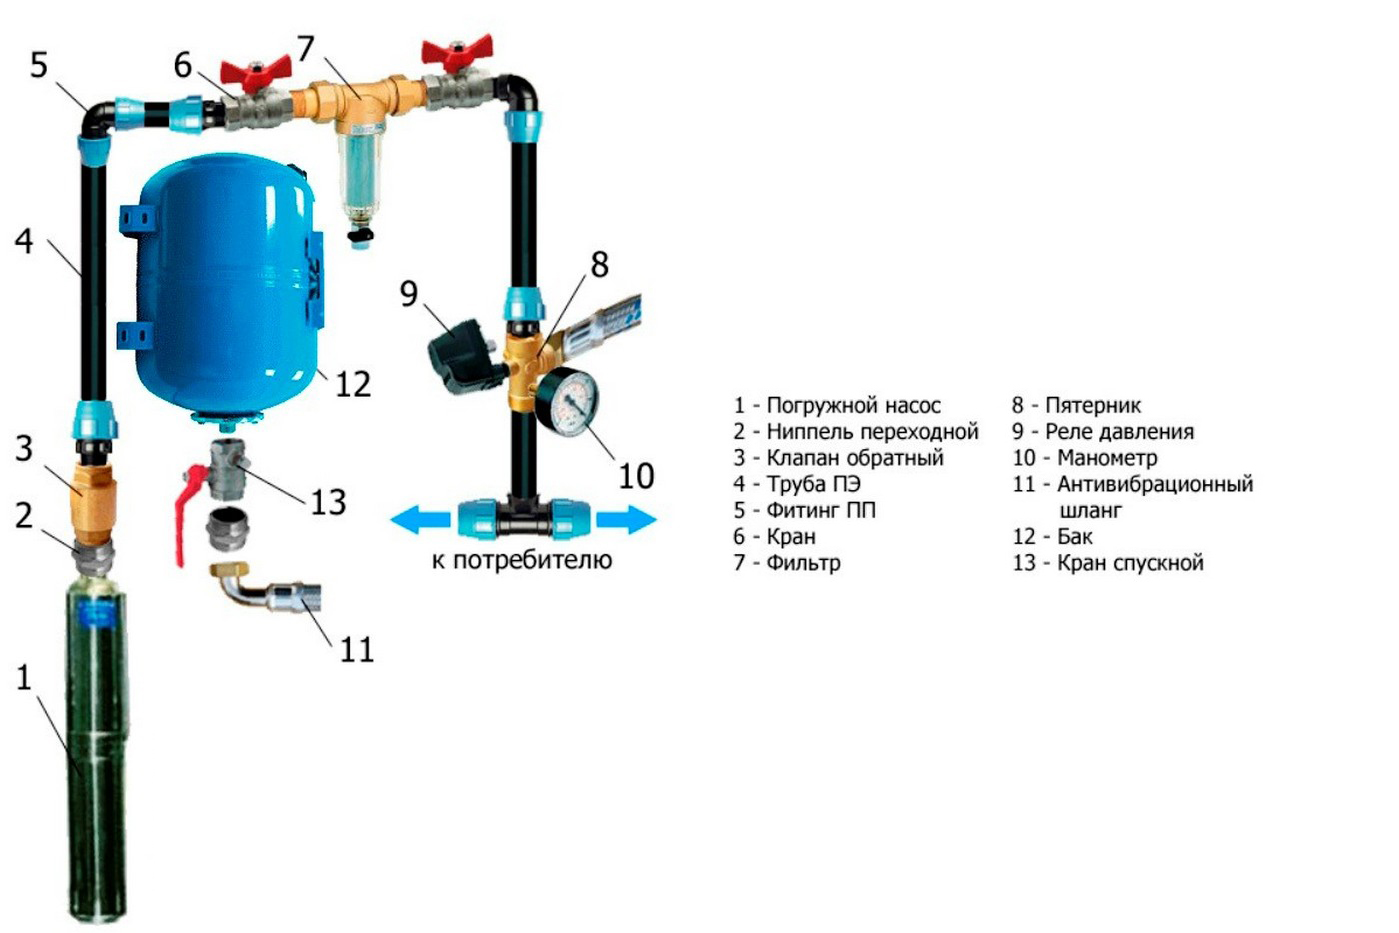 Как выбрать гидроаккумулятор для систем водоснабжения - жми!
как выбрать гидроаккумулятор для систем водоснабжения - жми!